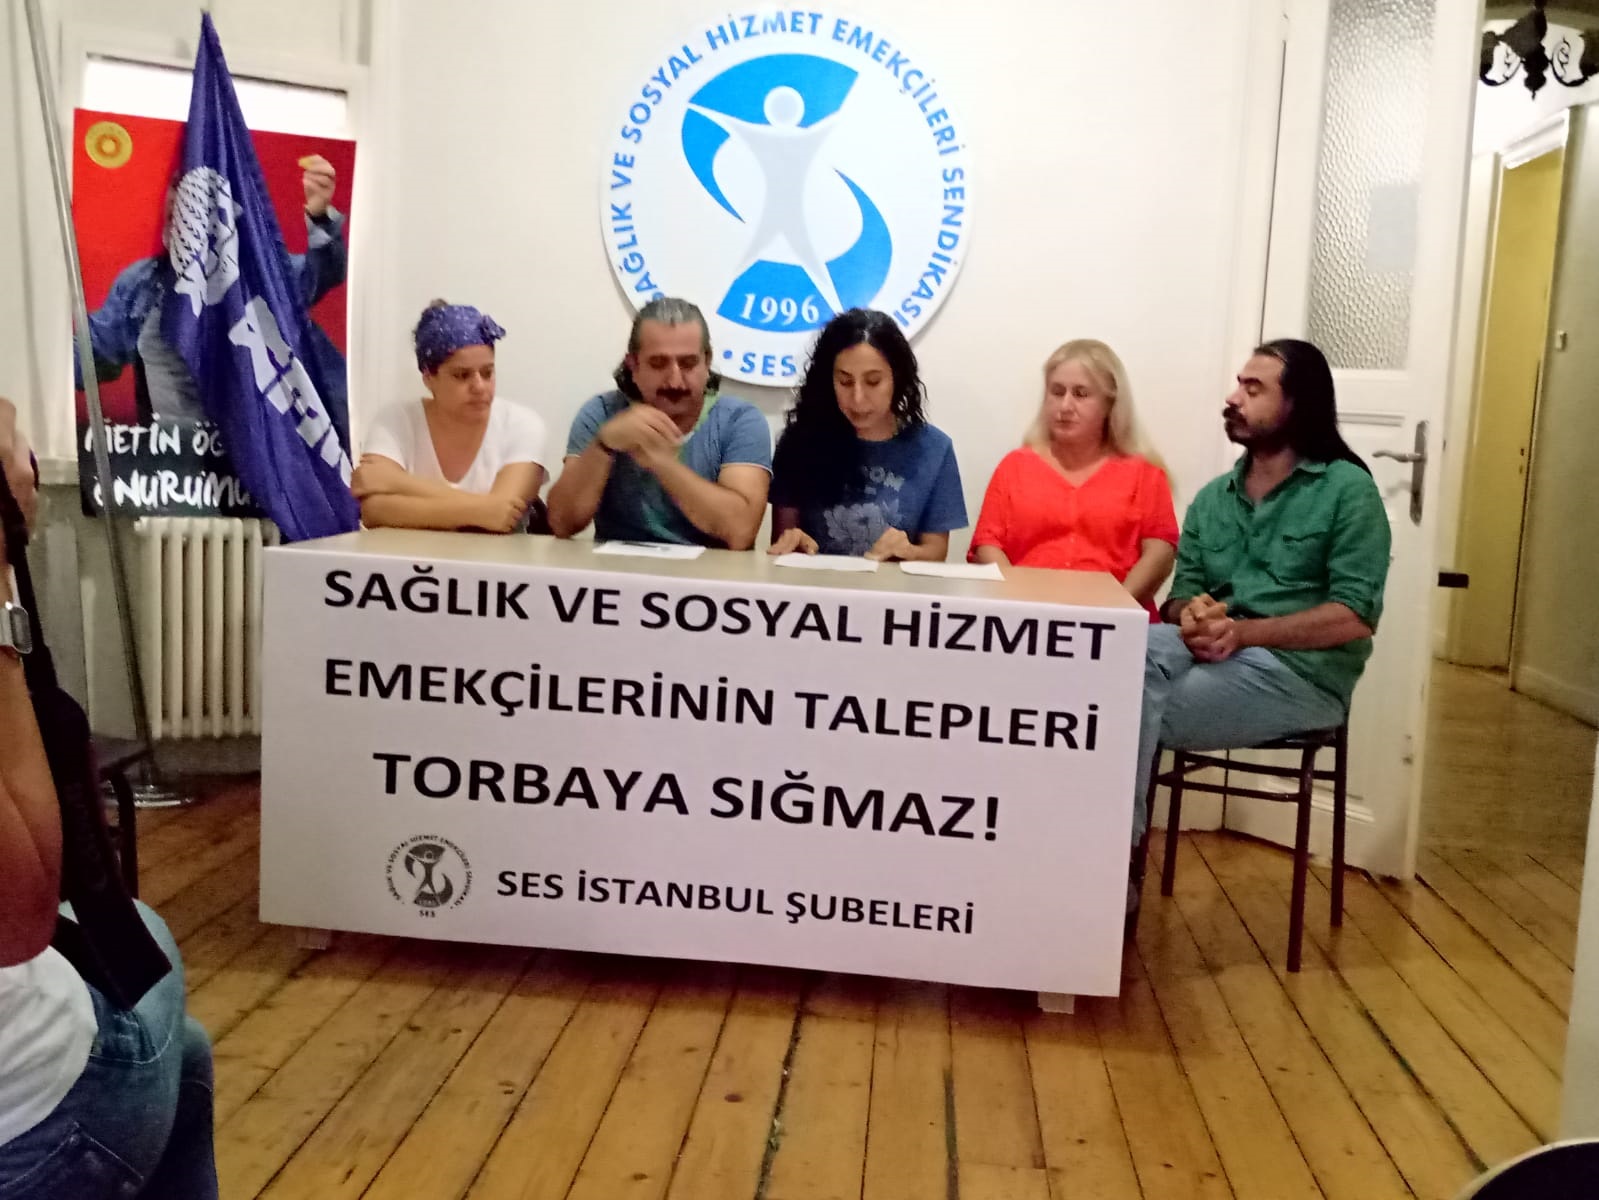 İstanbul Şubelerimiz: Sağlık ve Sosyal Hizmet Emekçilerinin Talepleri Torbaya Sığmaz